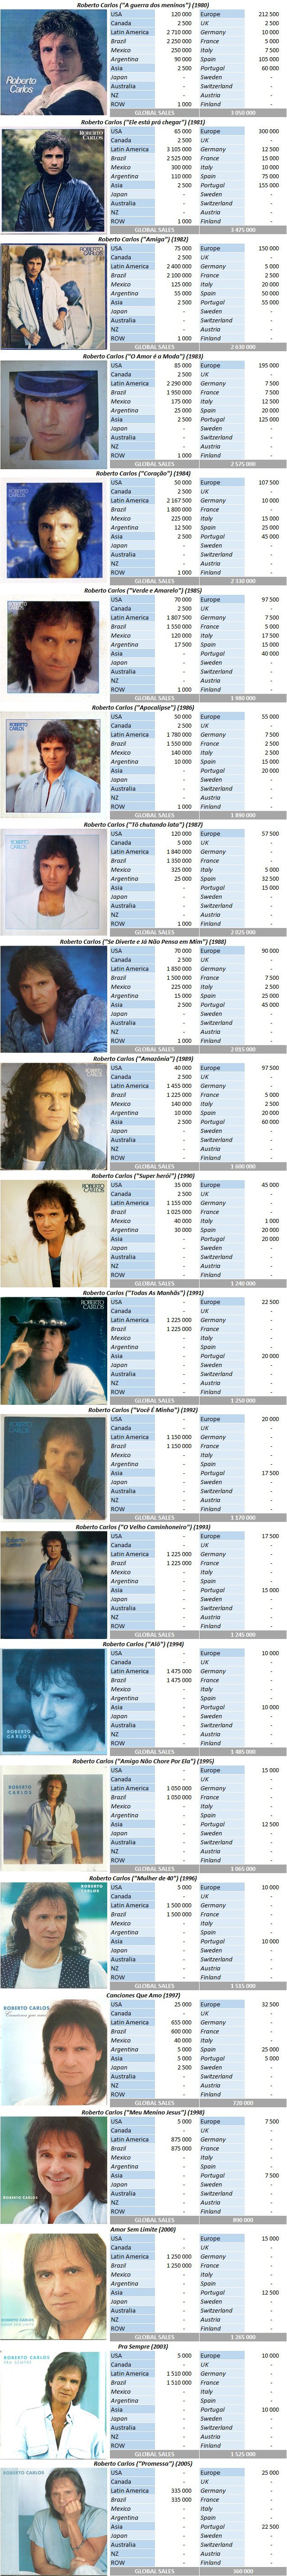 CSPC Roberto Carlos album sales breakdown 80s 90s 00s